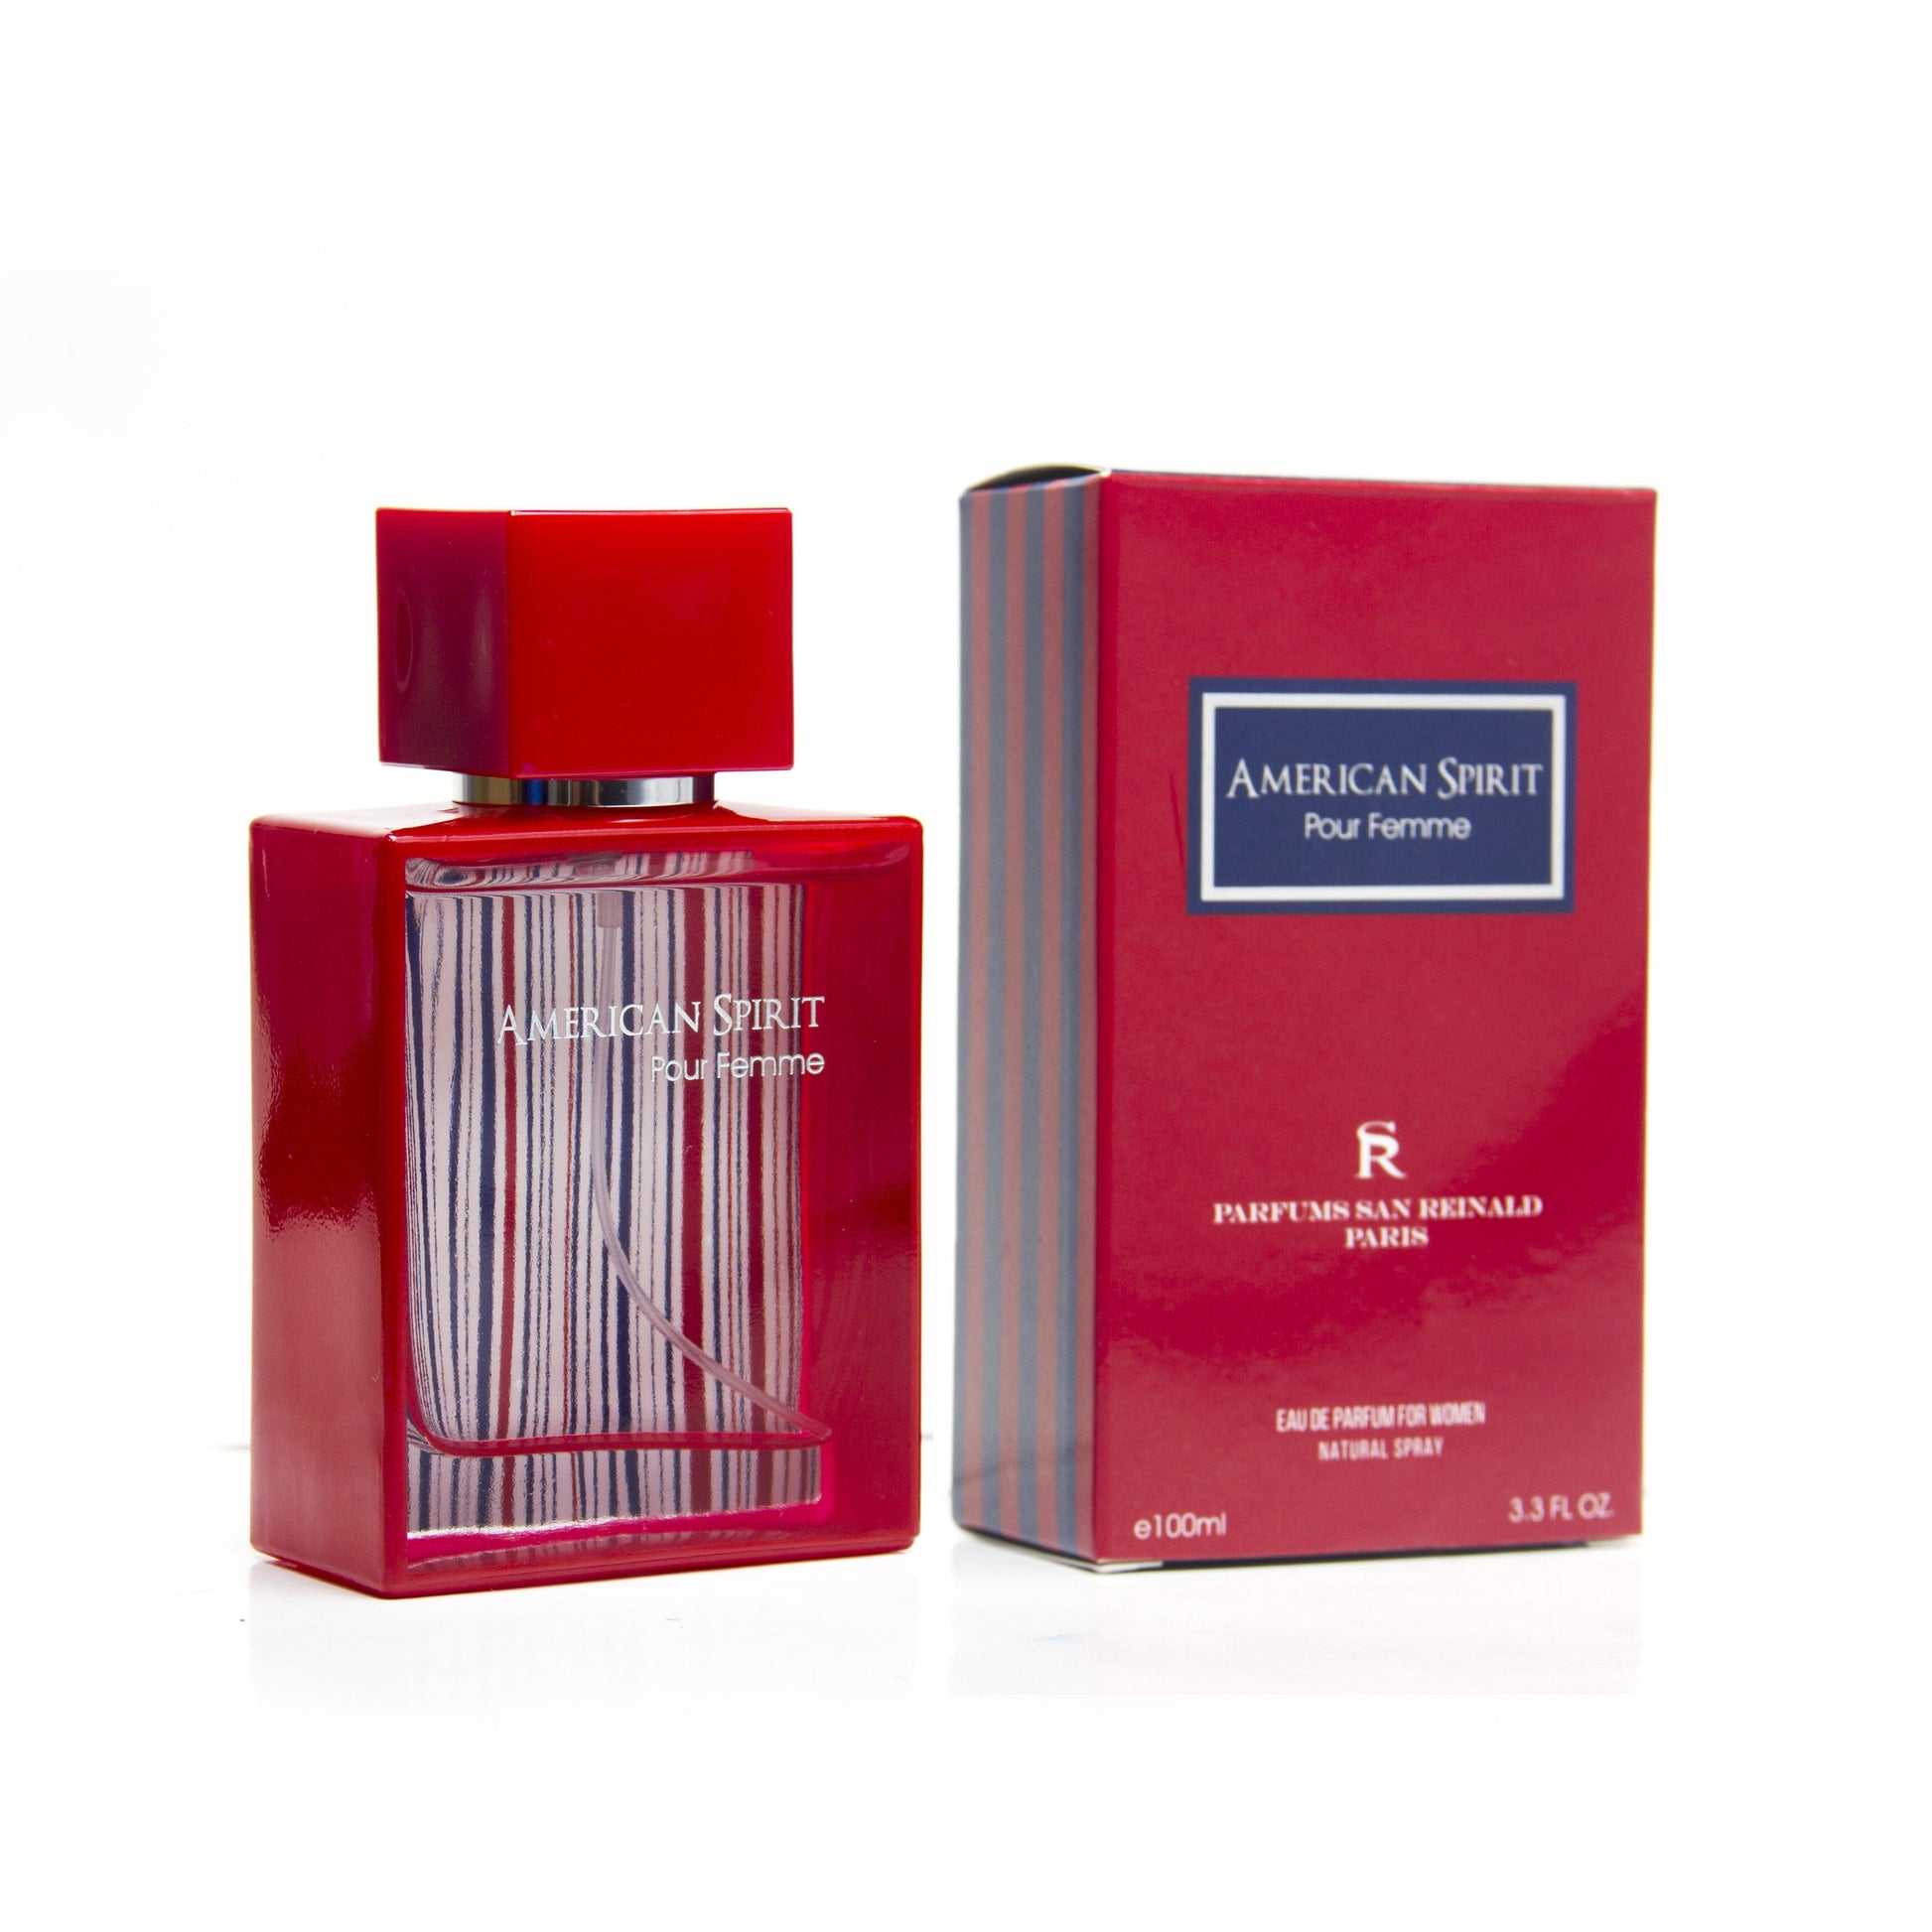 American Spirit Pour Femme Eau de Parfum Spray for Women by San Reinald, Product image 1